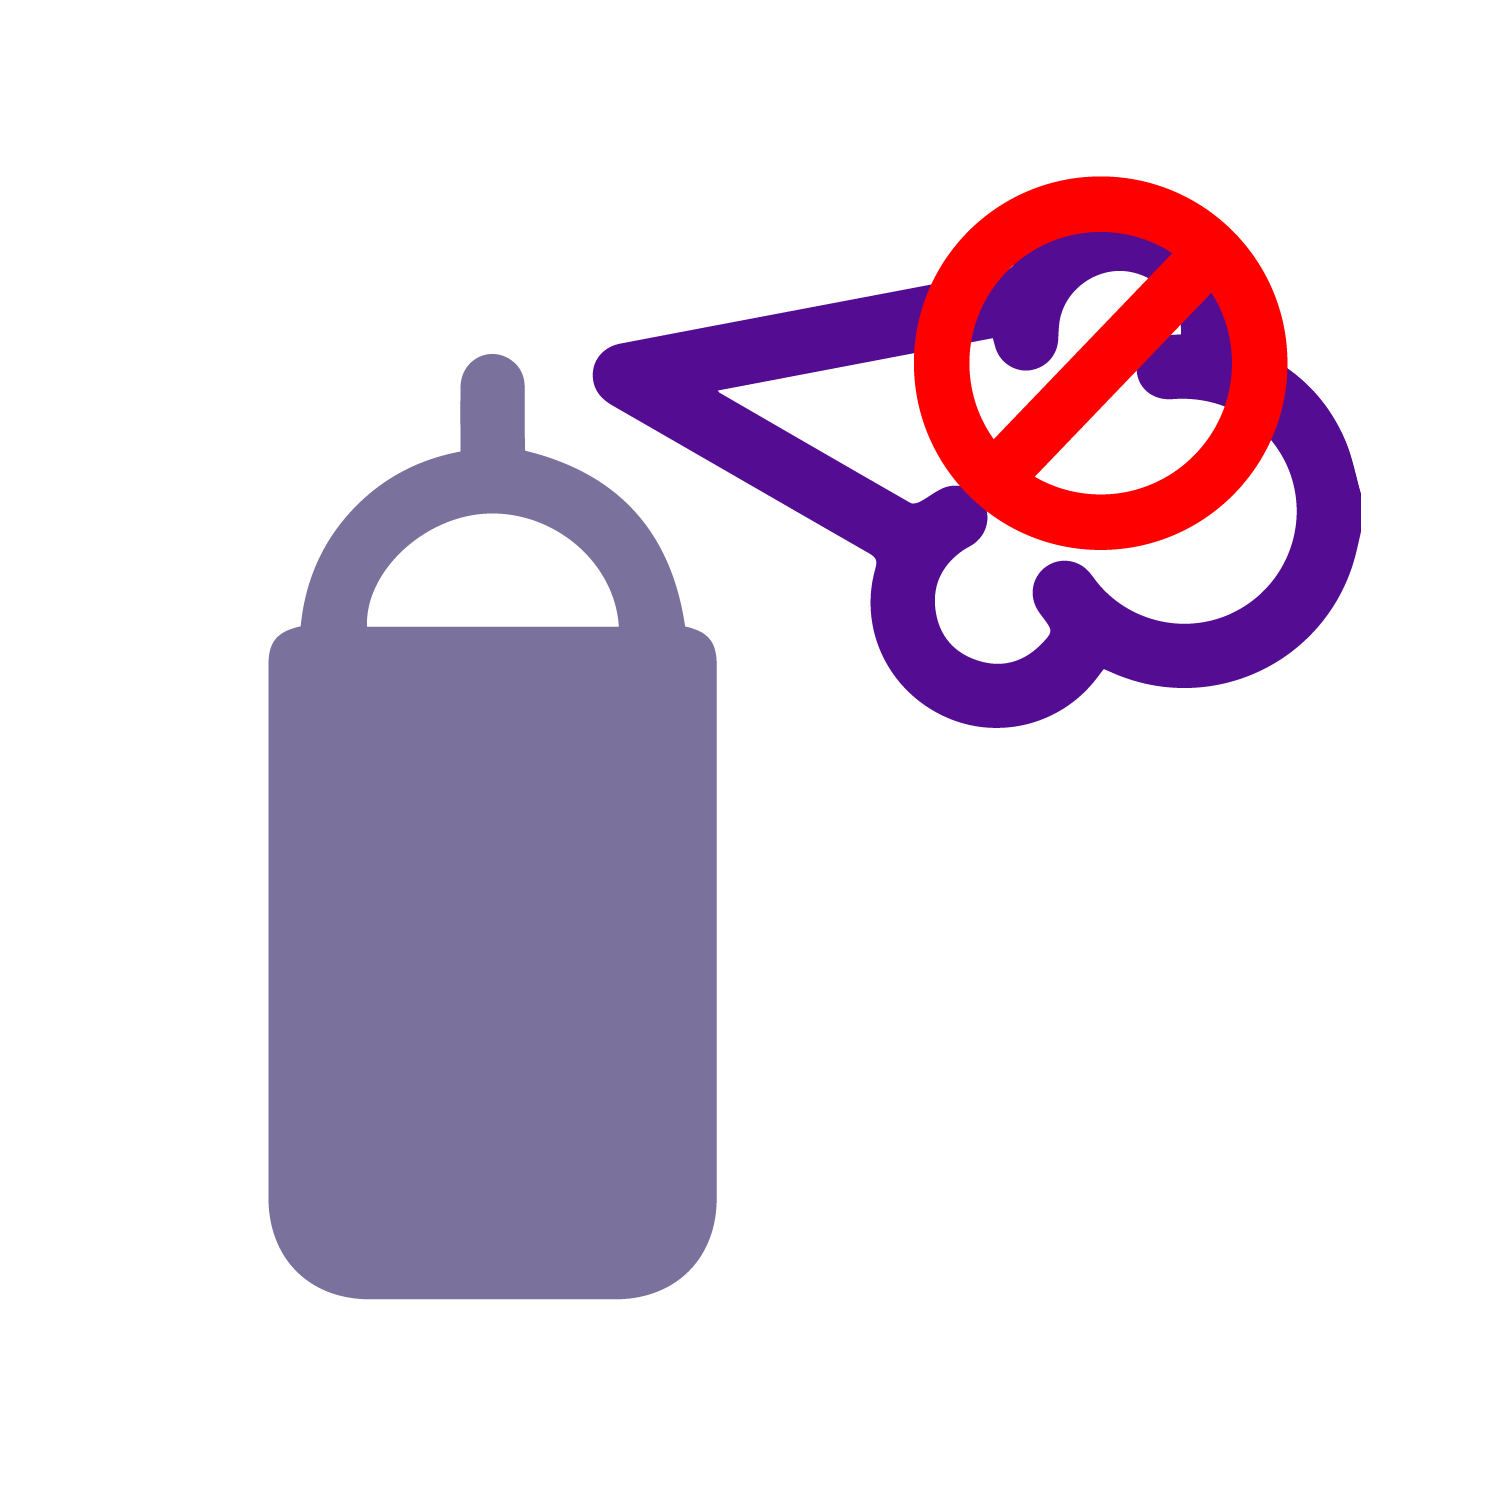 Ilustración no usar aerosoles